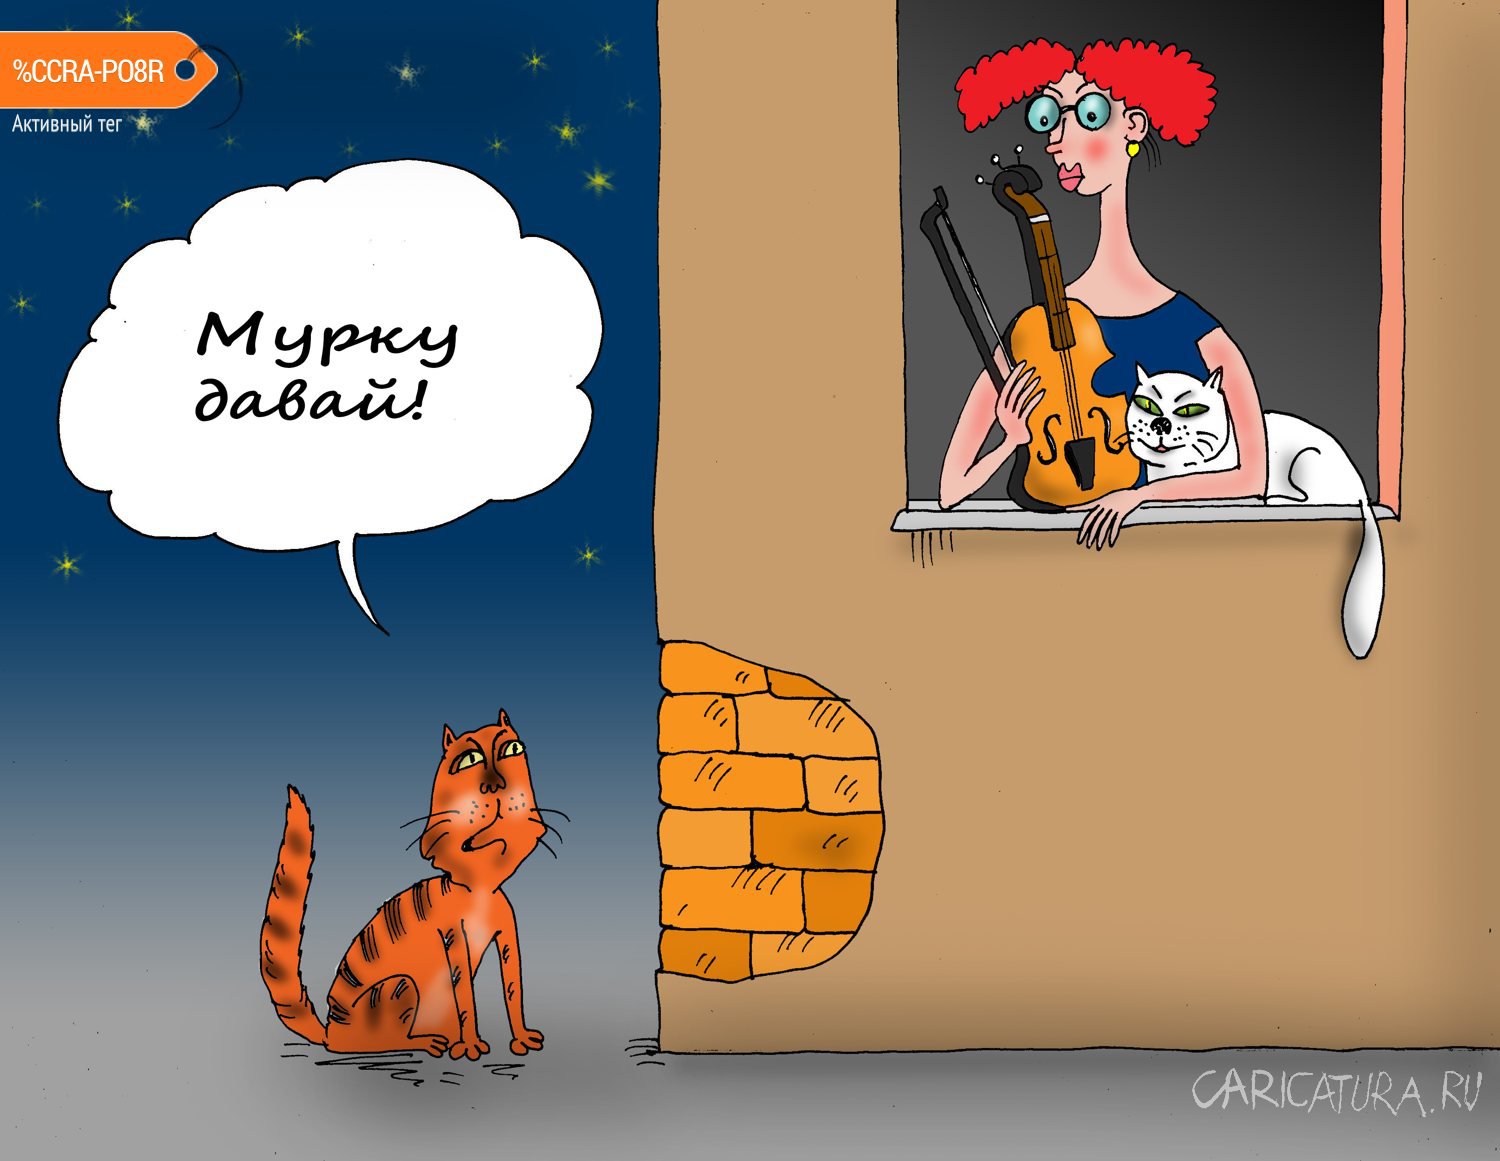 Карикатура "Мурка", Валерий Тарасенко